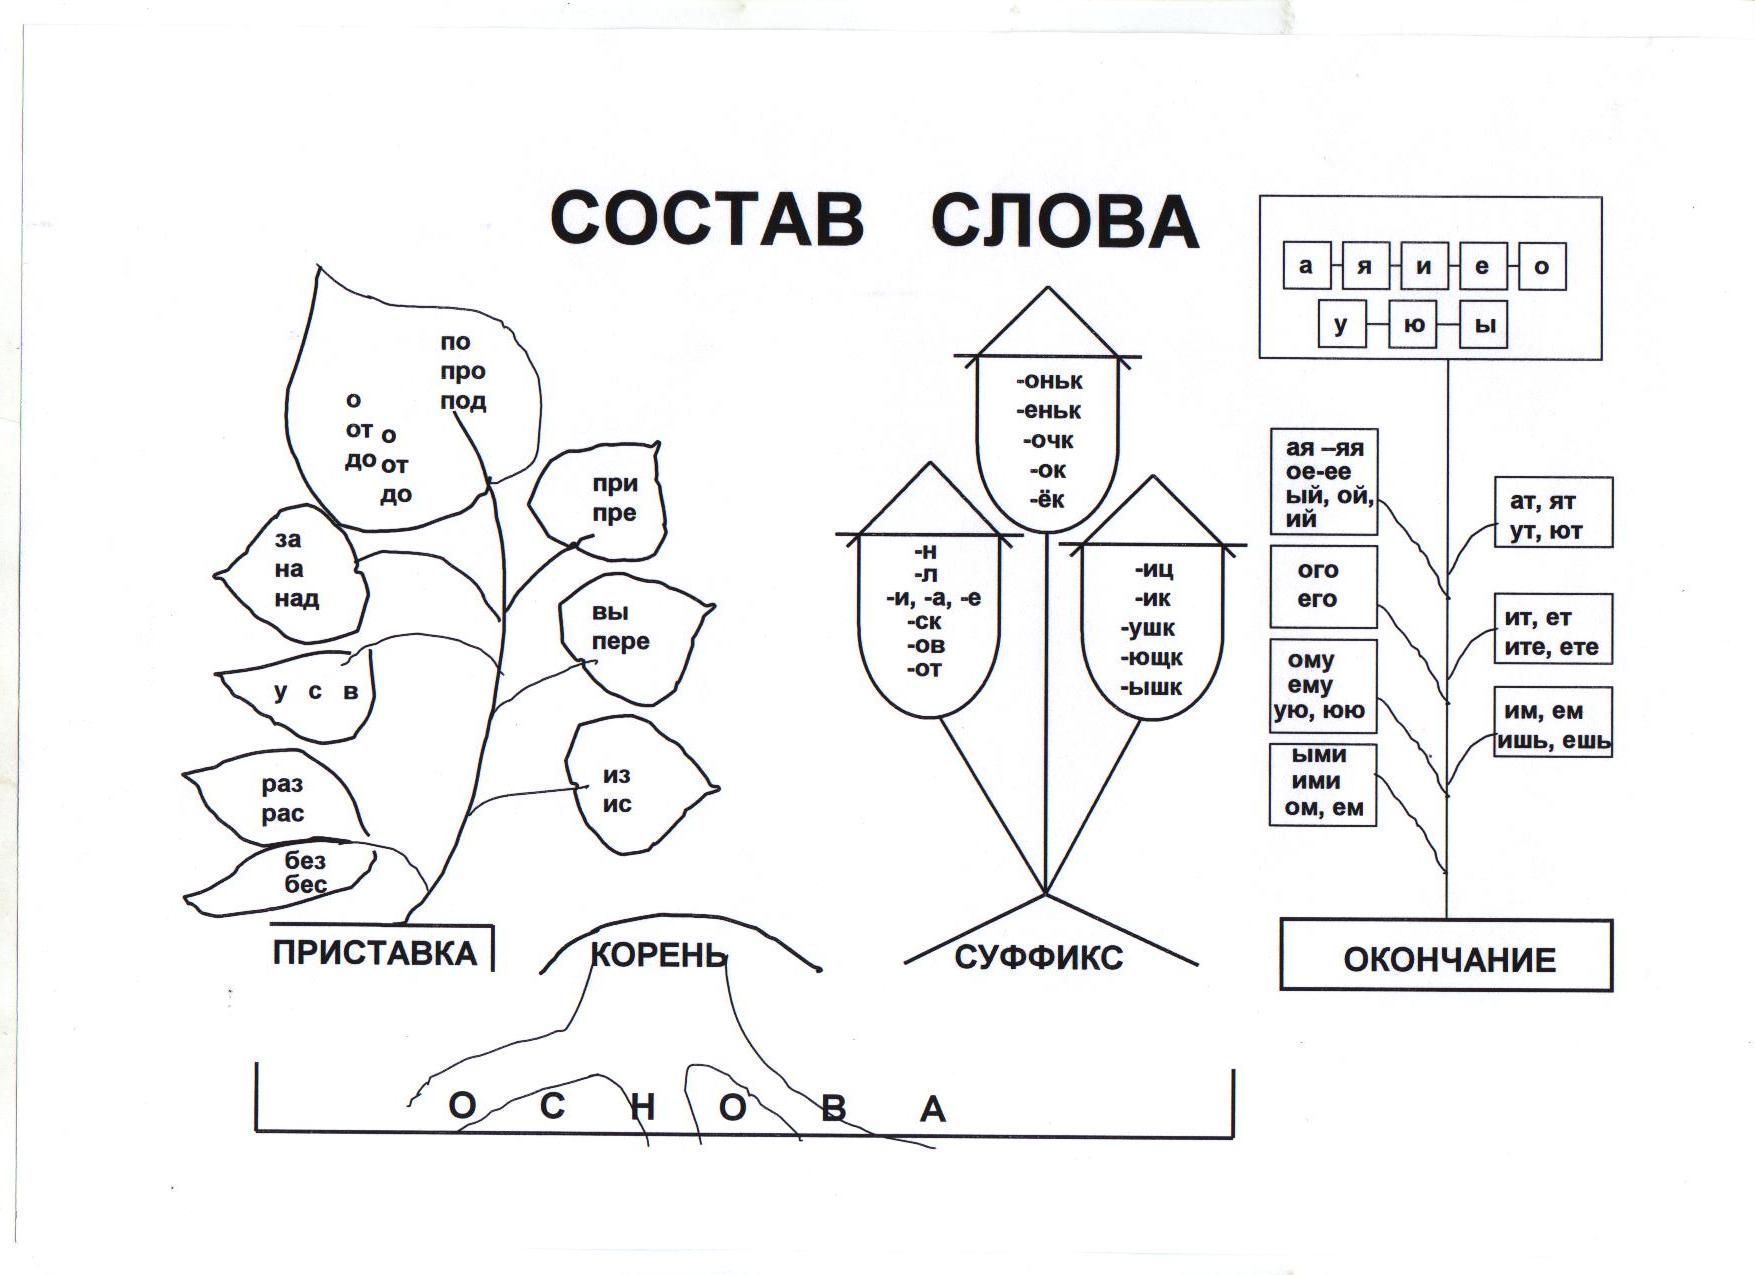 Занимательные карточки по русскому языку